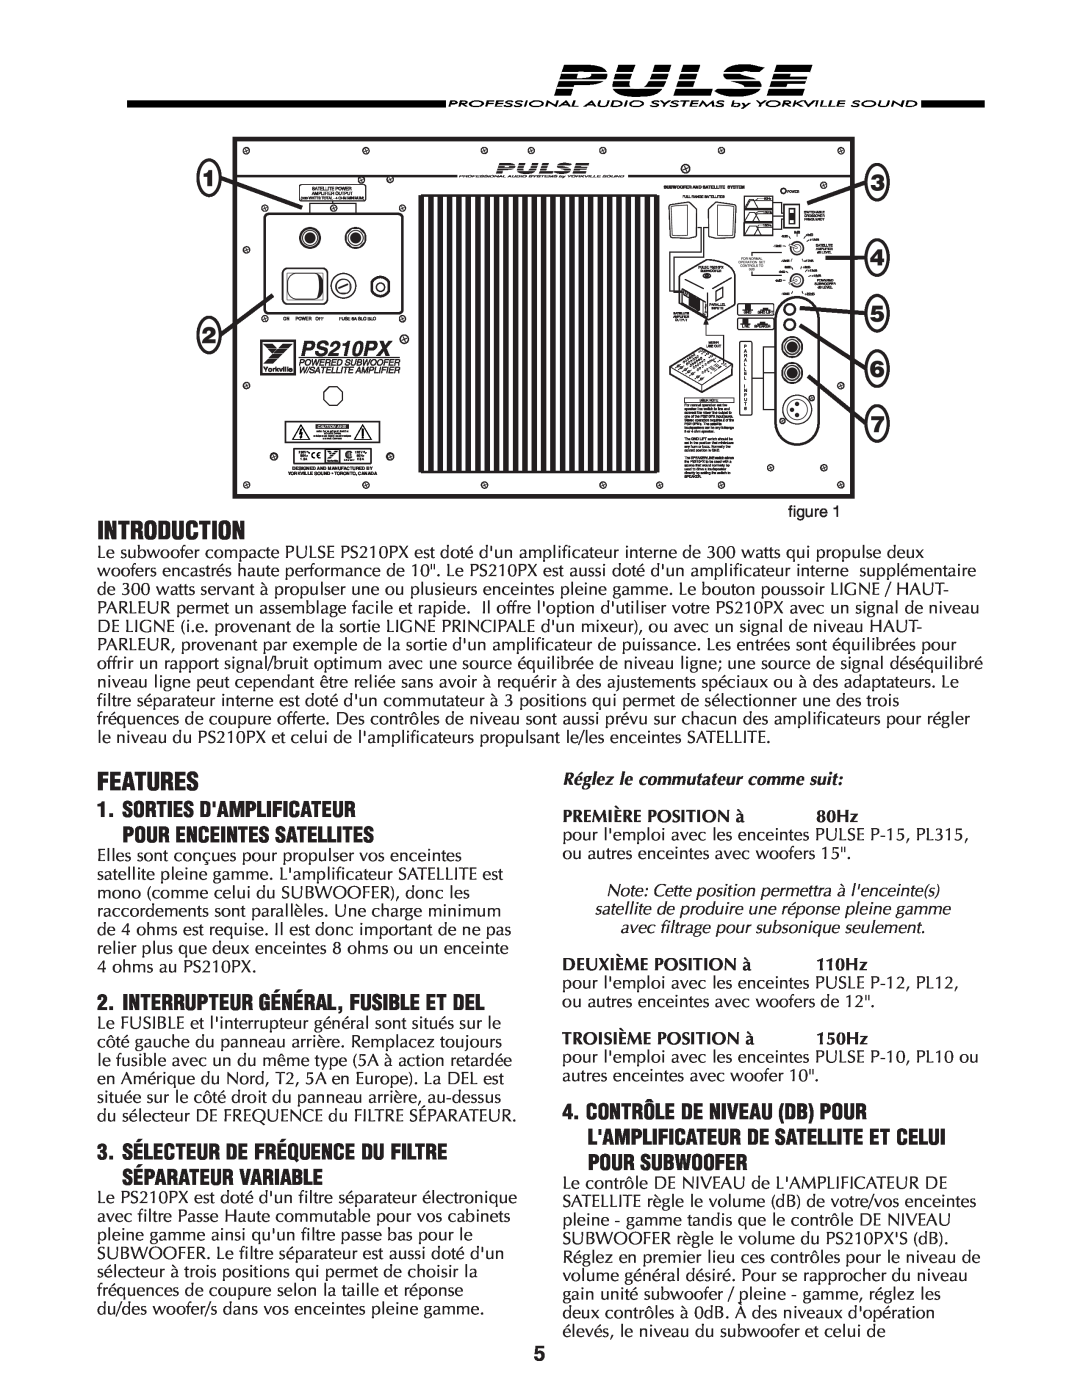 Yorkville Sound PS210PX Pour Subwoofer, Interrupteur Général, Fusible Et Del, Introduction, Features, PREMIÈRE POSITION à 